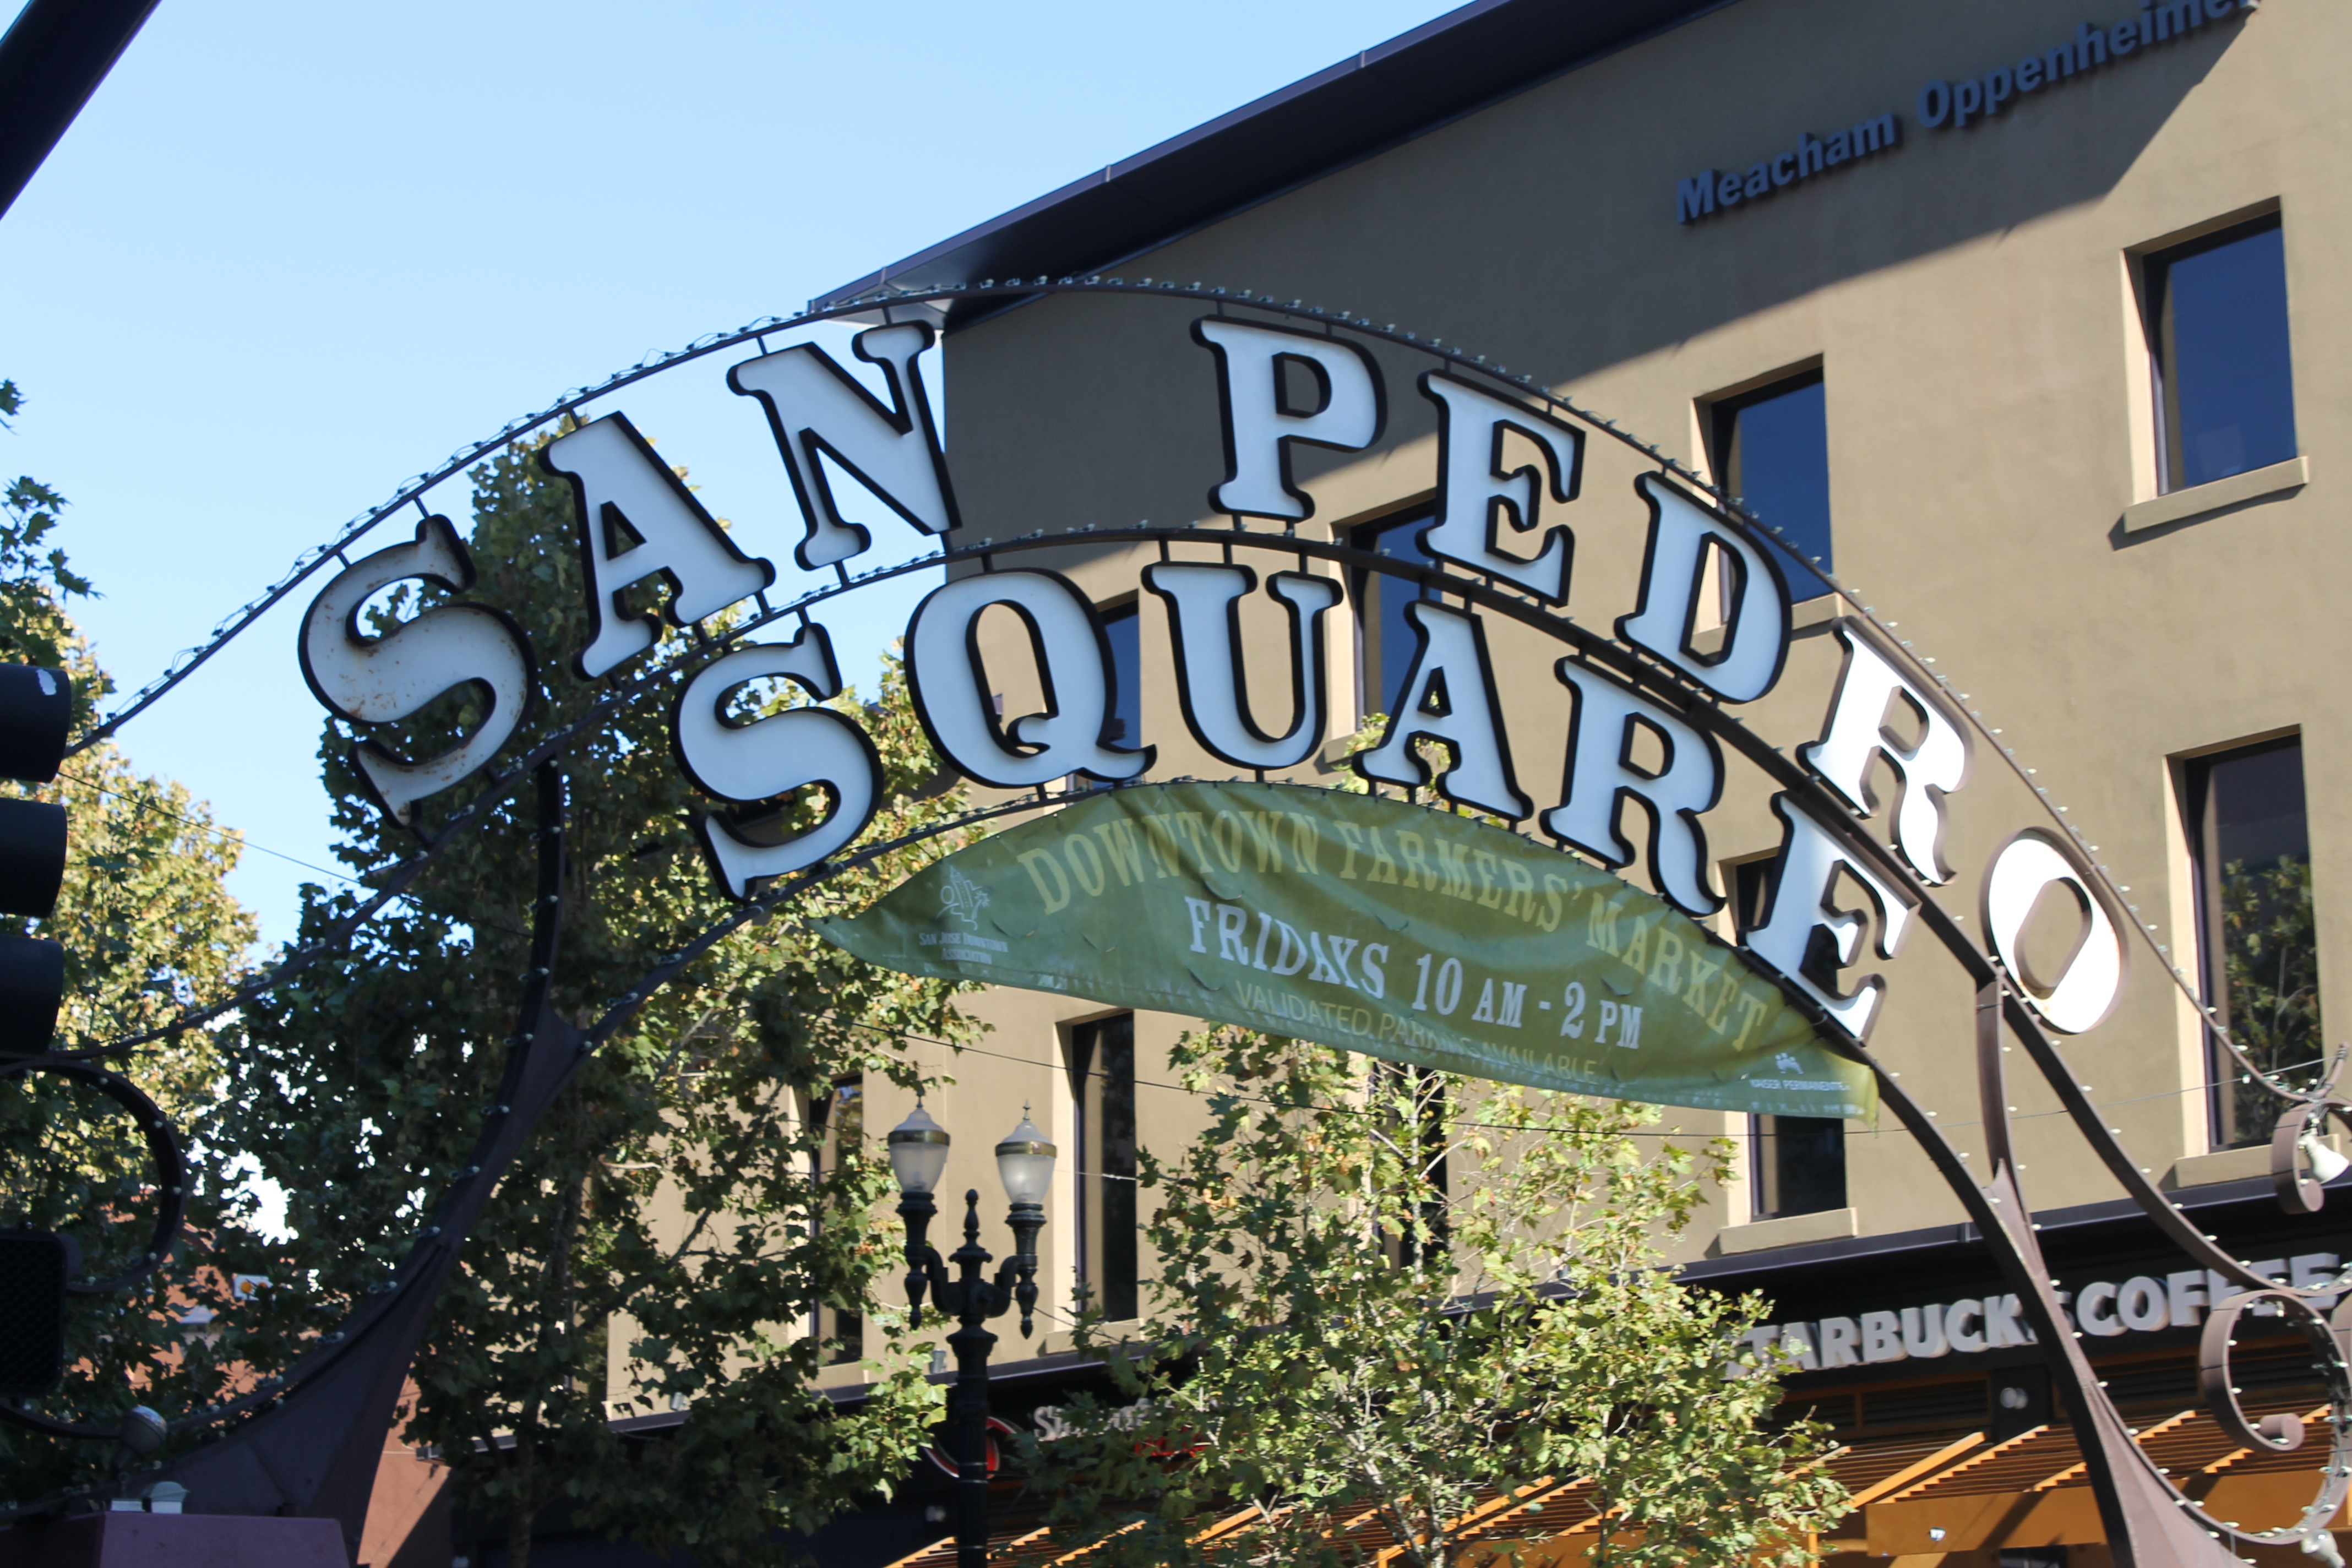 San Pedro Square Market – newtritionsavvysarah